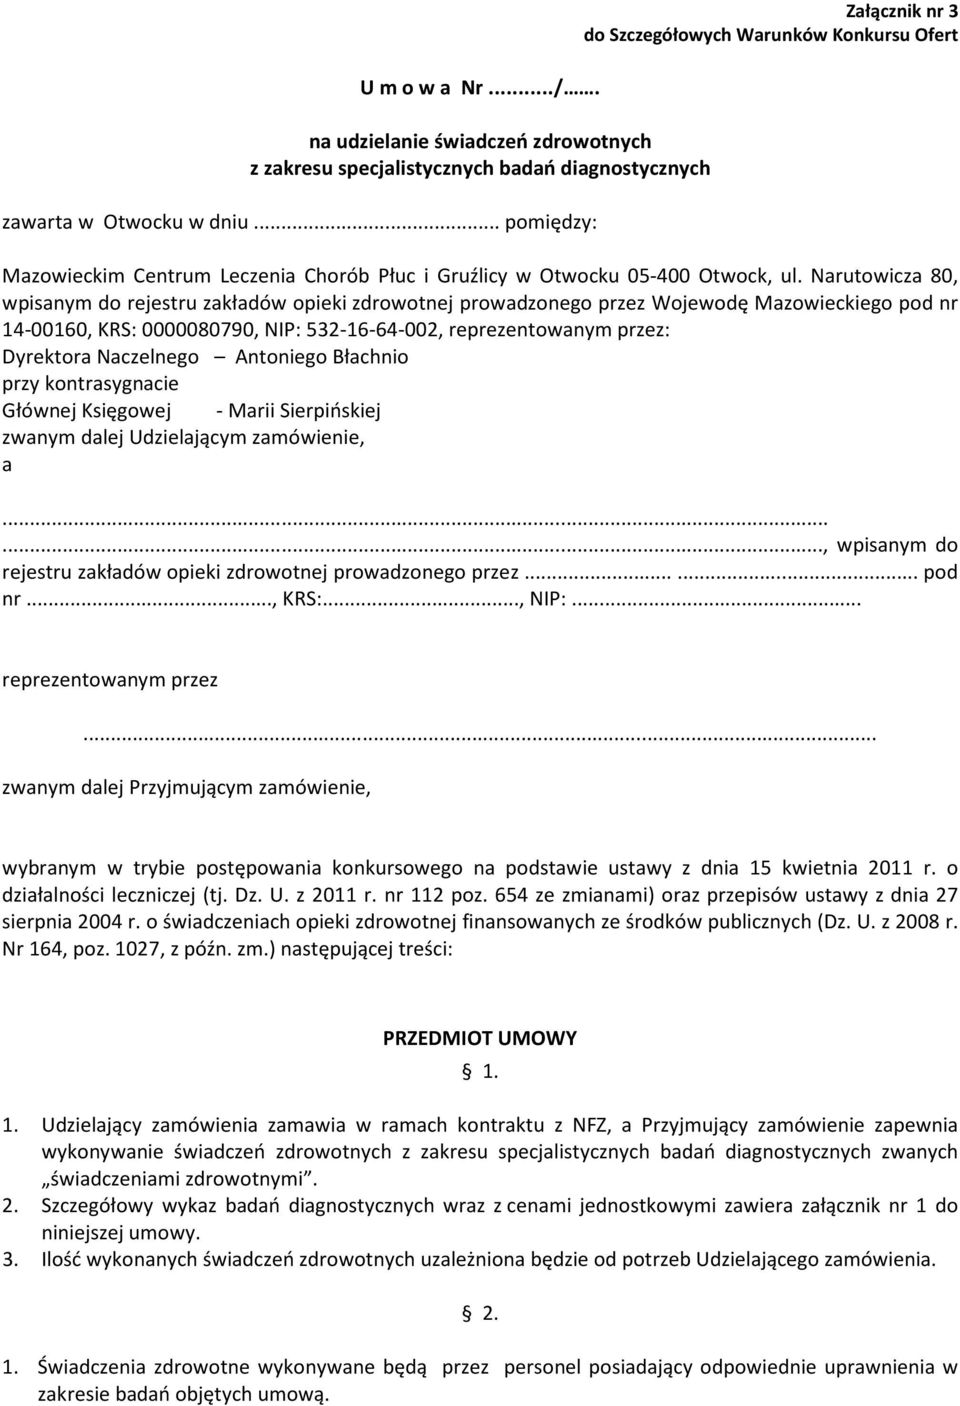 Narutowicza 80, wpisanym do rejestru zakładów opieki zdrowotnej prowadzonego przez Wojewodę Mazowieckiego pod nr 14-00160, KRS: 0000080790, NIP: 532-16-64-002, reprezentowanym przez: Dyrektora